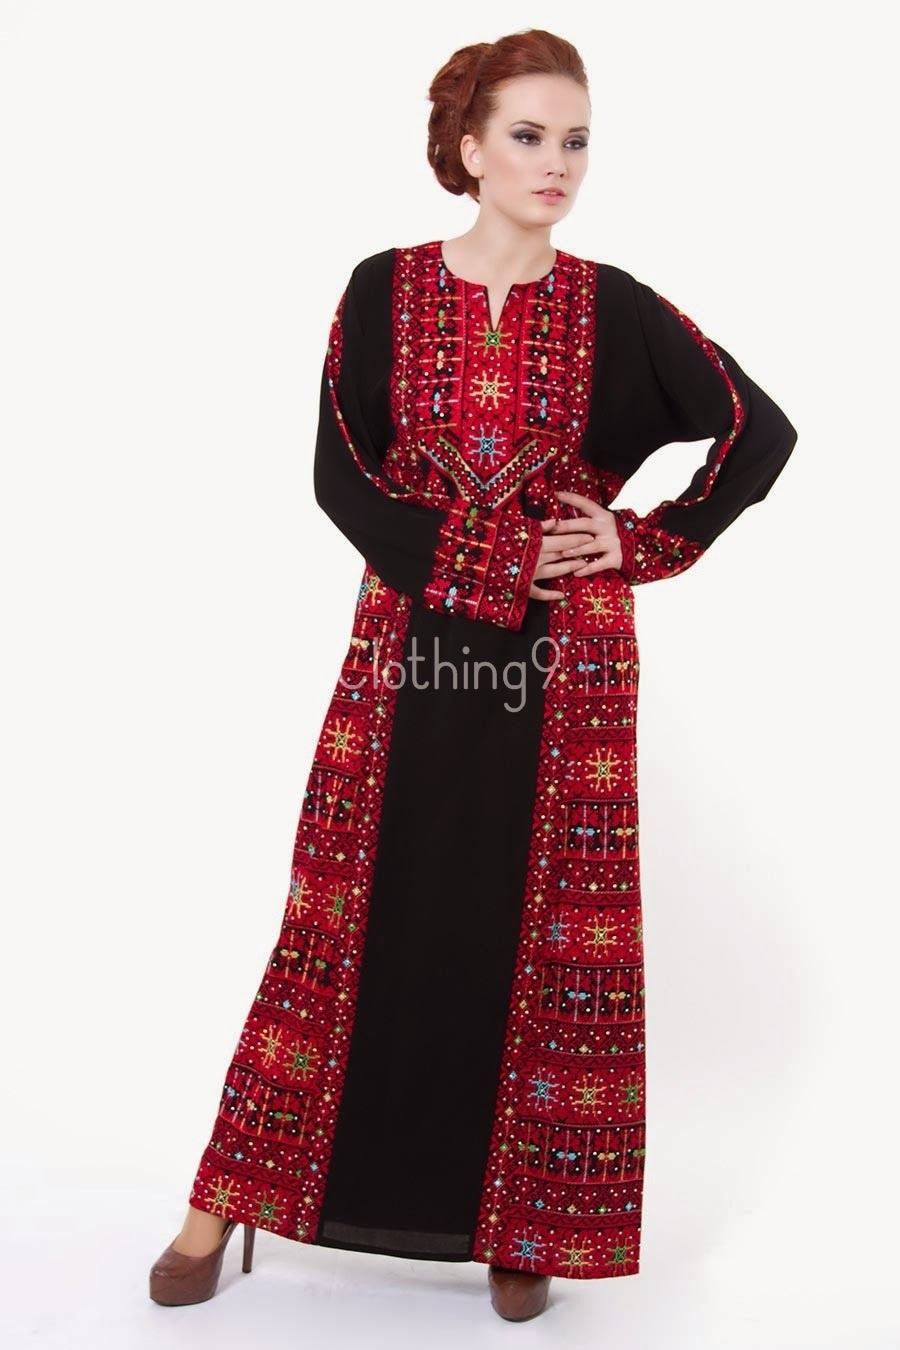 عبايات سوداء قمة الانوثة والاناقة والرشاقة والجمال للمحجبات Embroidered-abaya-designs-2014-dubai-10